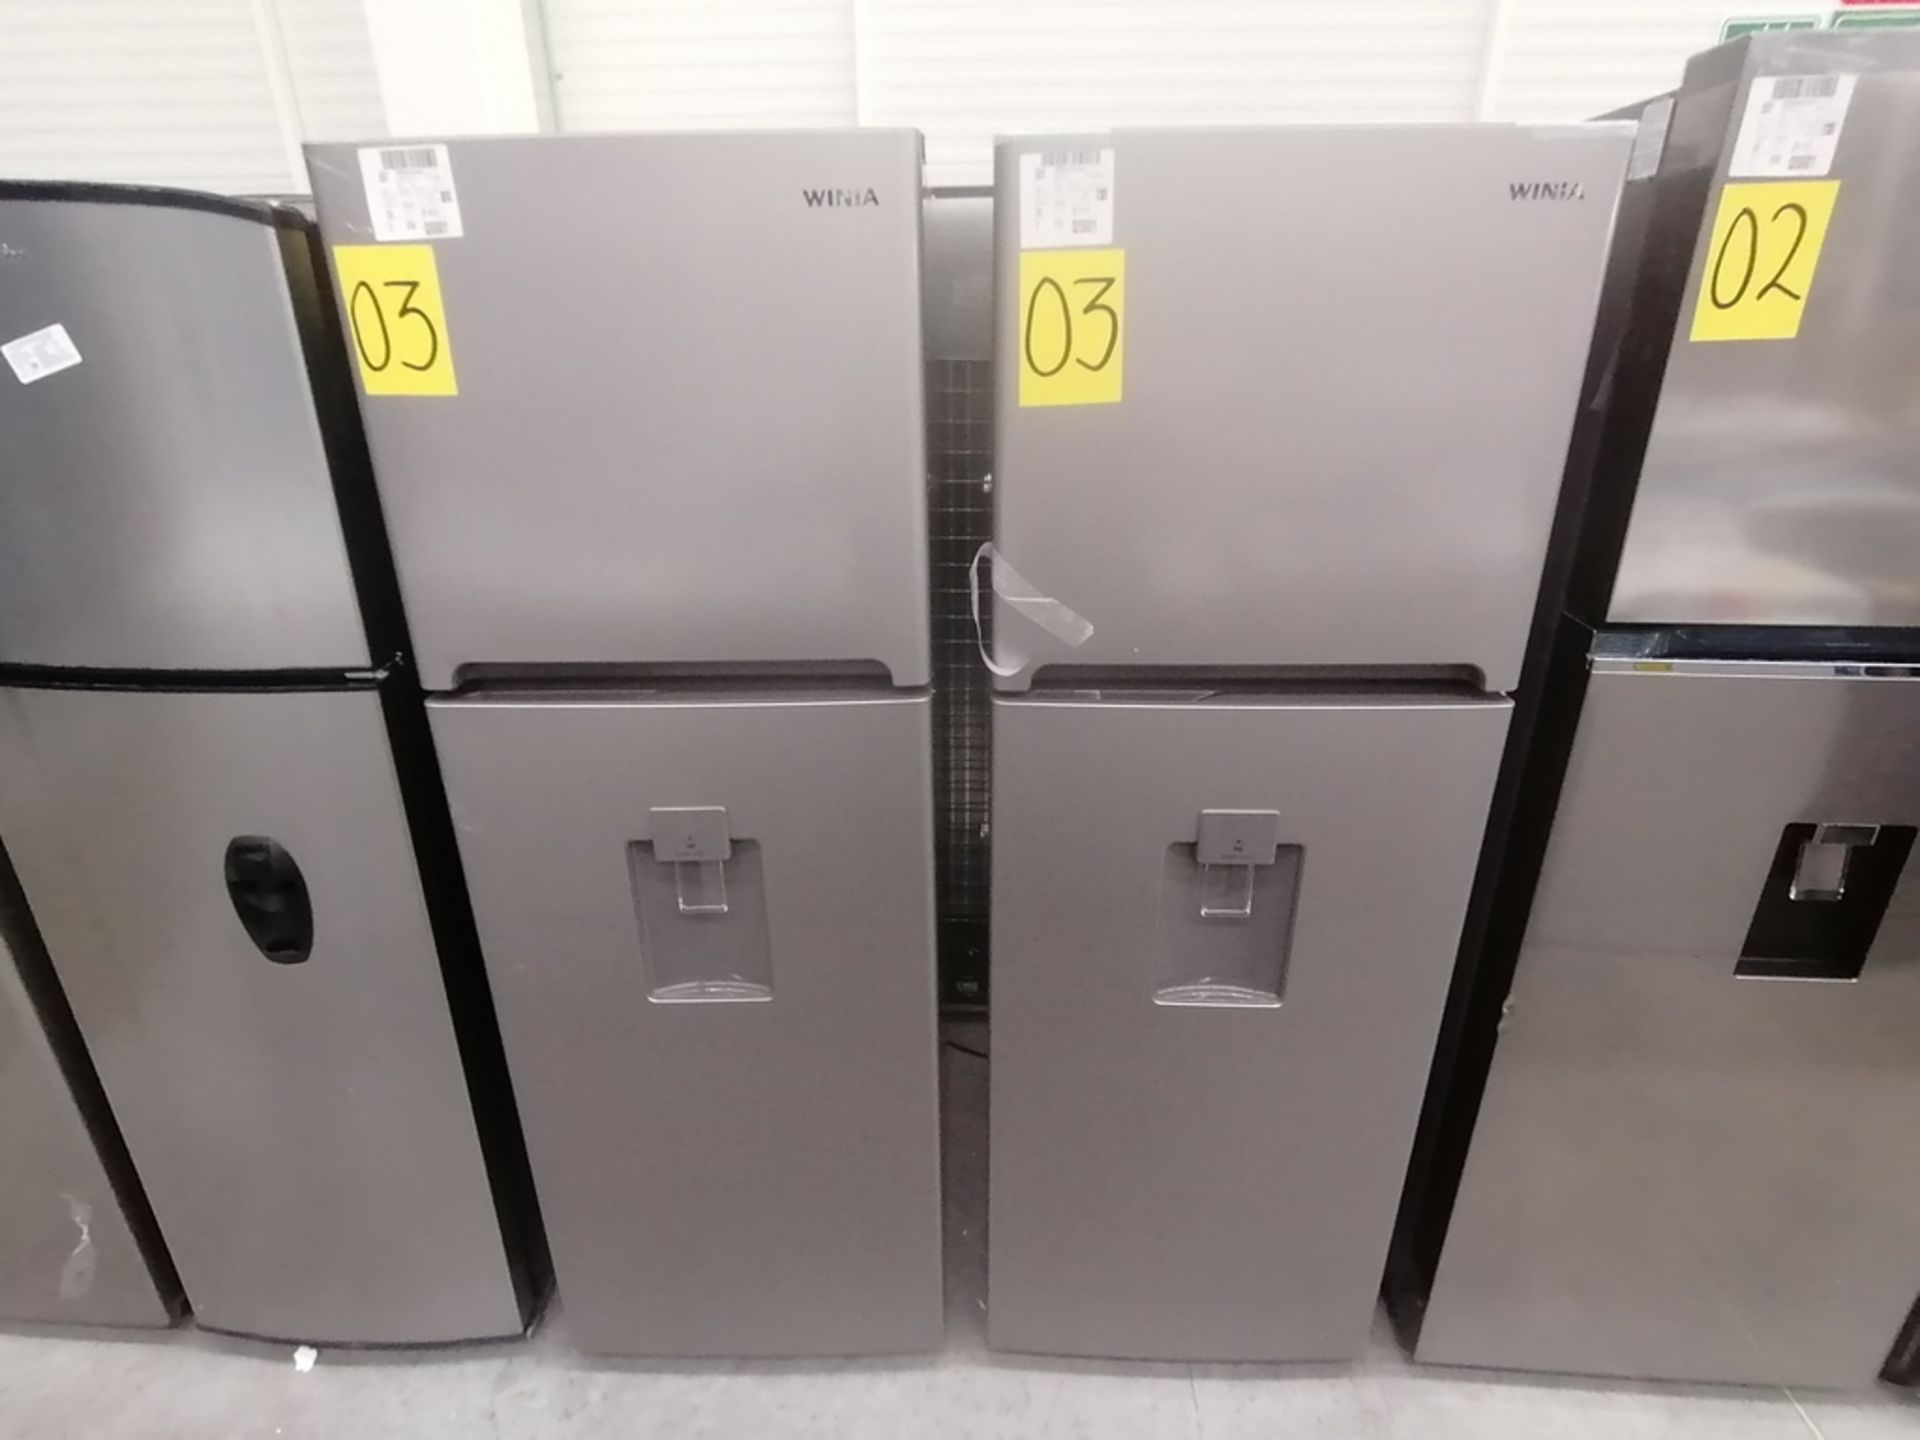 Lote de 2 refrigeradores incluye: 1 Refrigerador con dispensador de agua, Marca Winia, Modelo DFR32 - Image 4 of 15